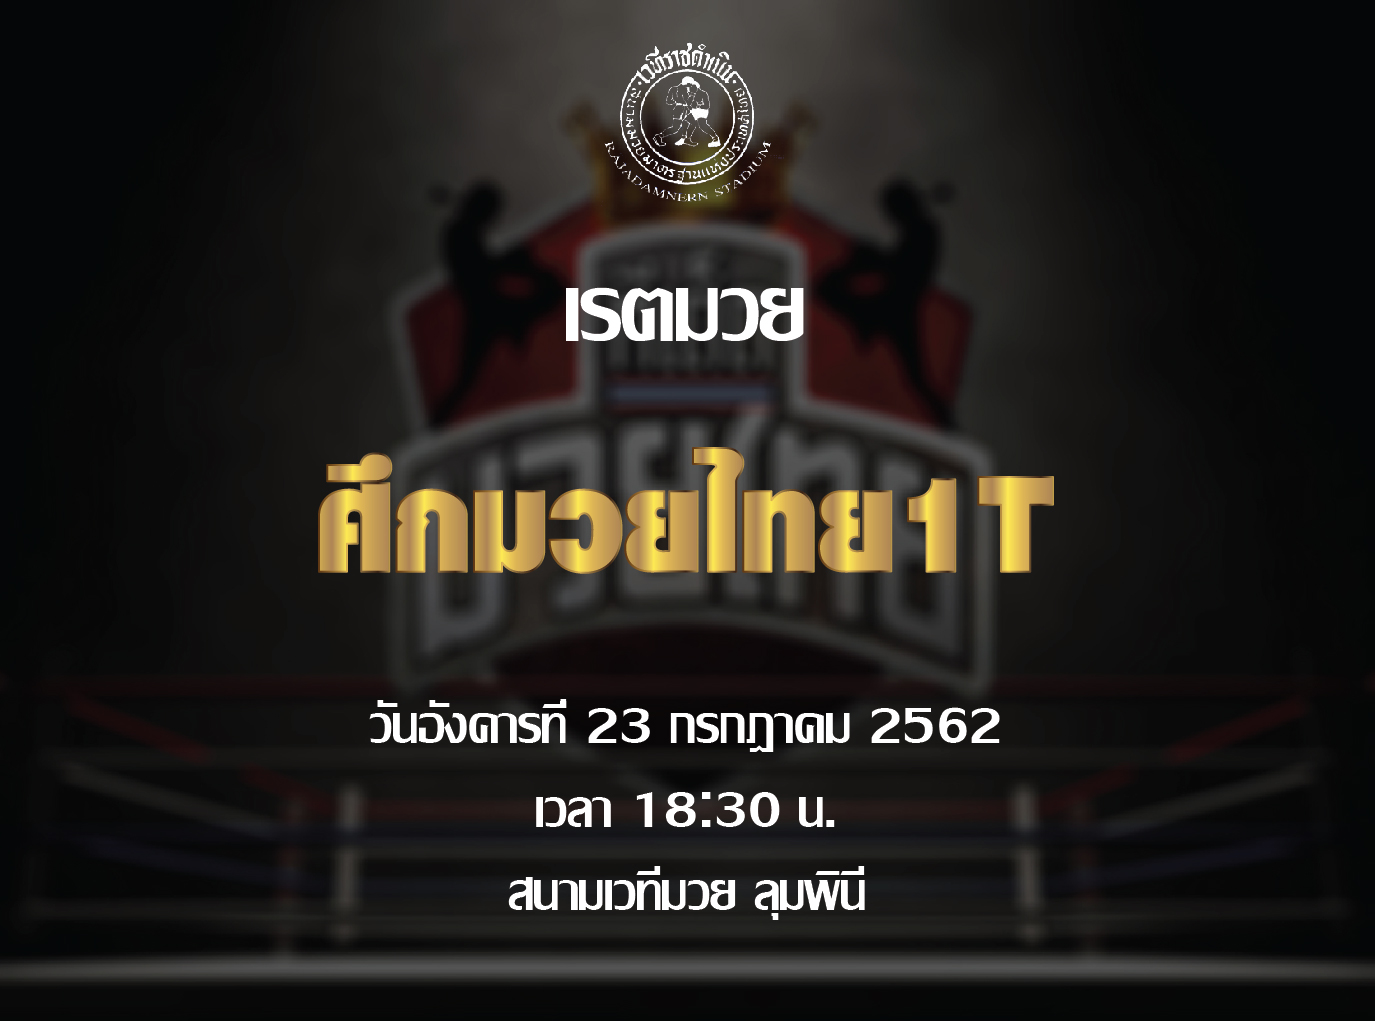 เรตมวย มวยไทย 1-T วันอังคารที่ 23 กรกฎาคม 2562 